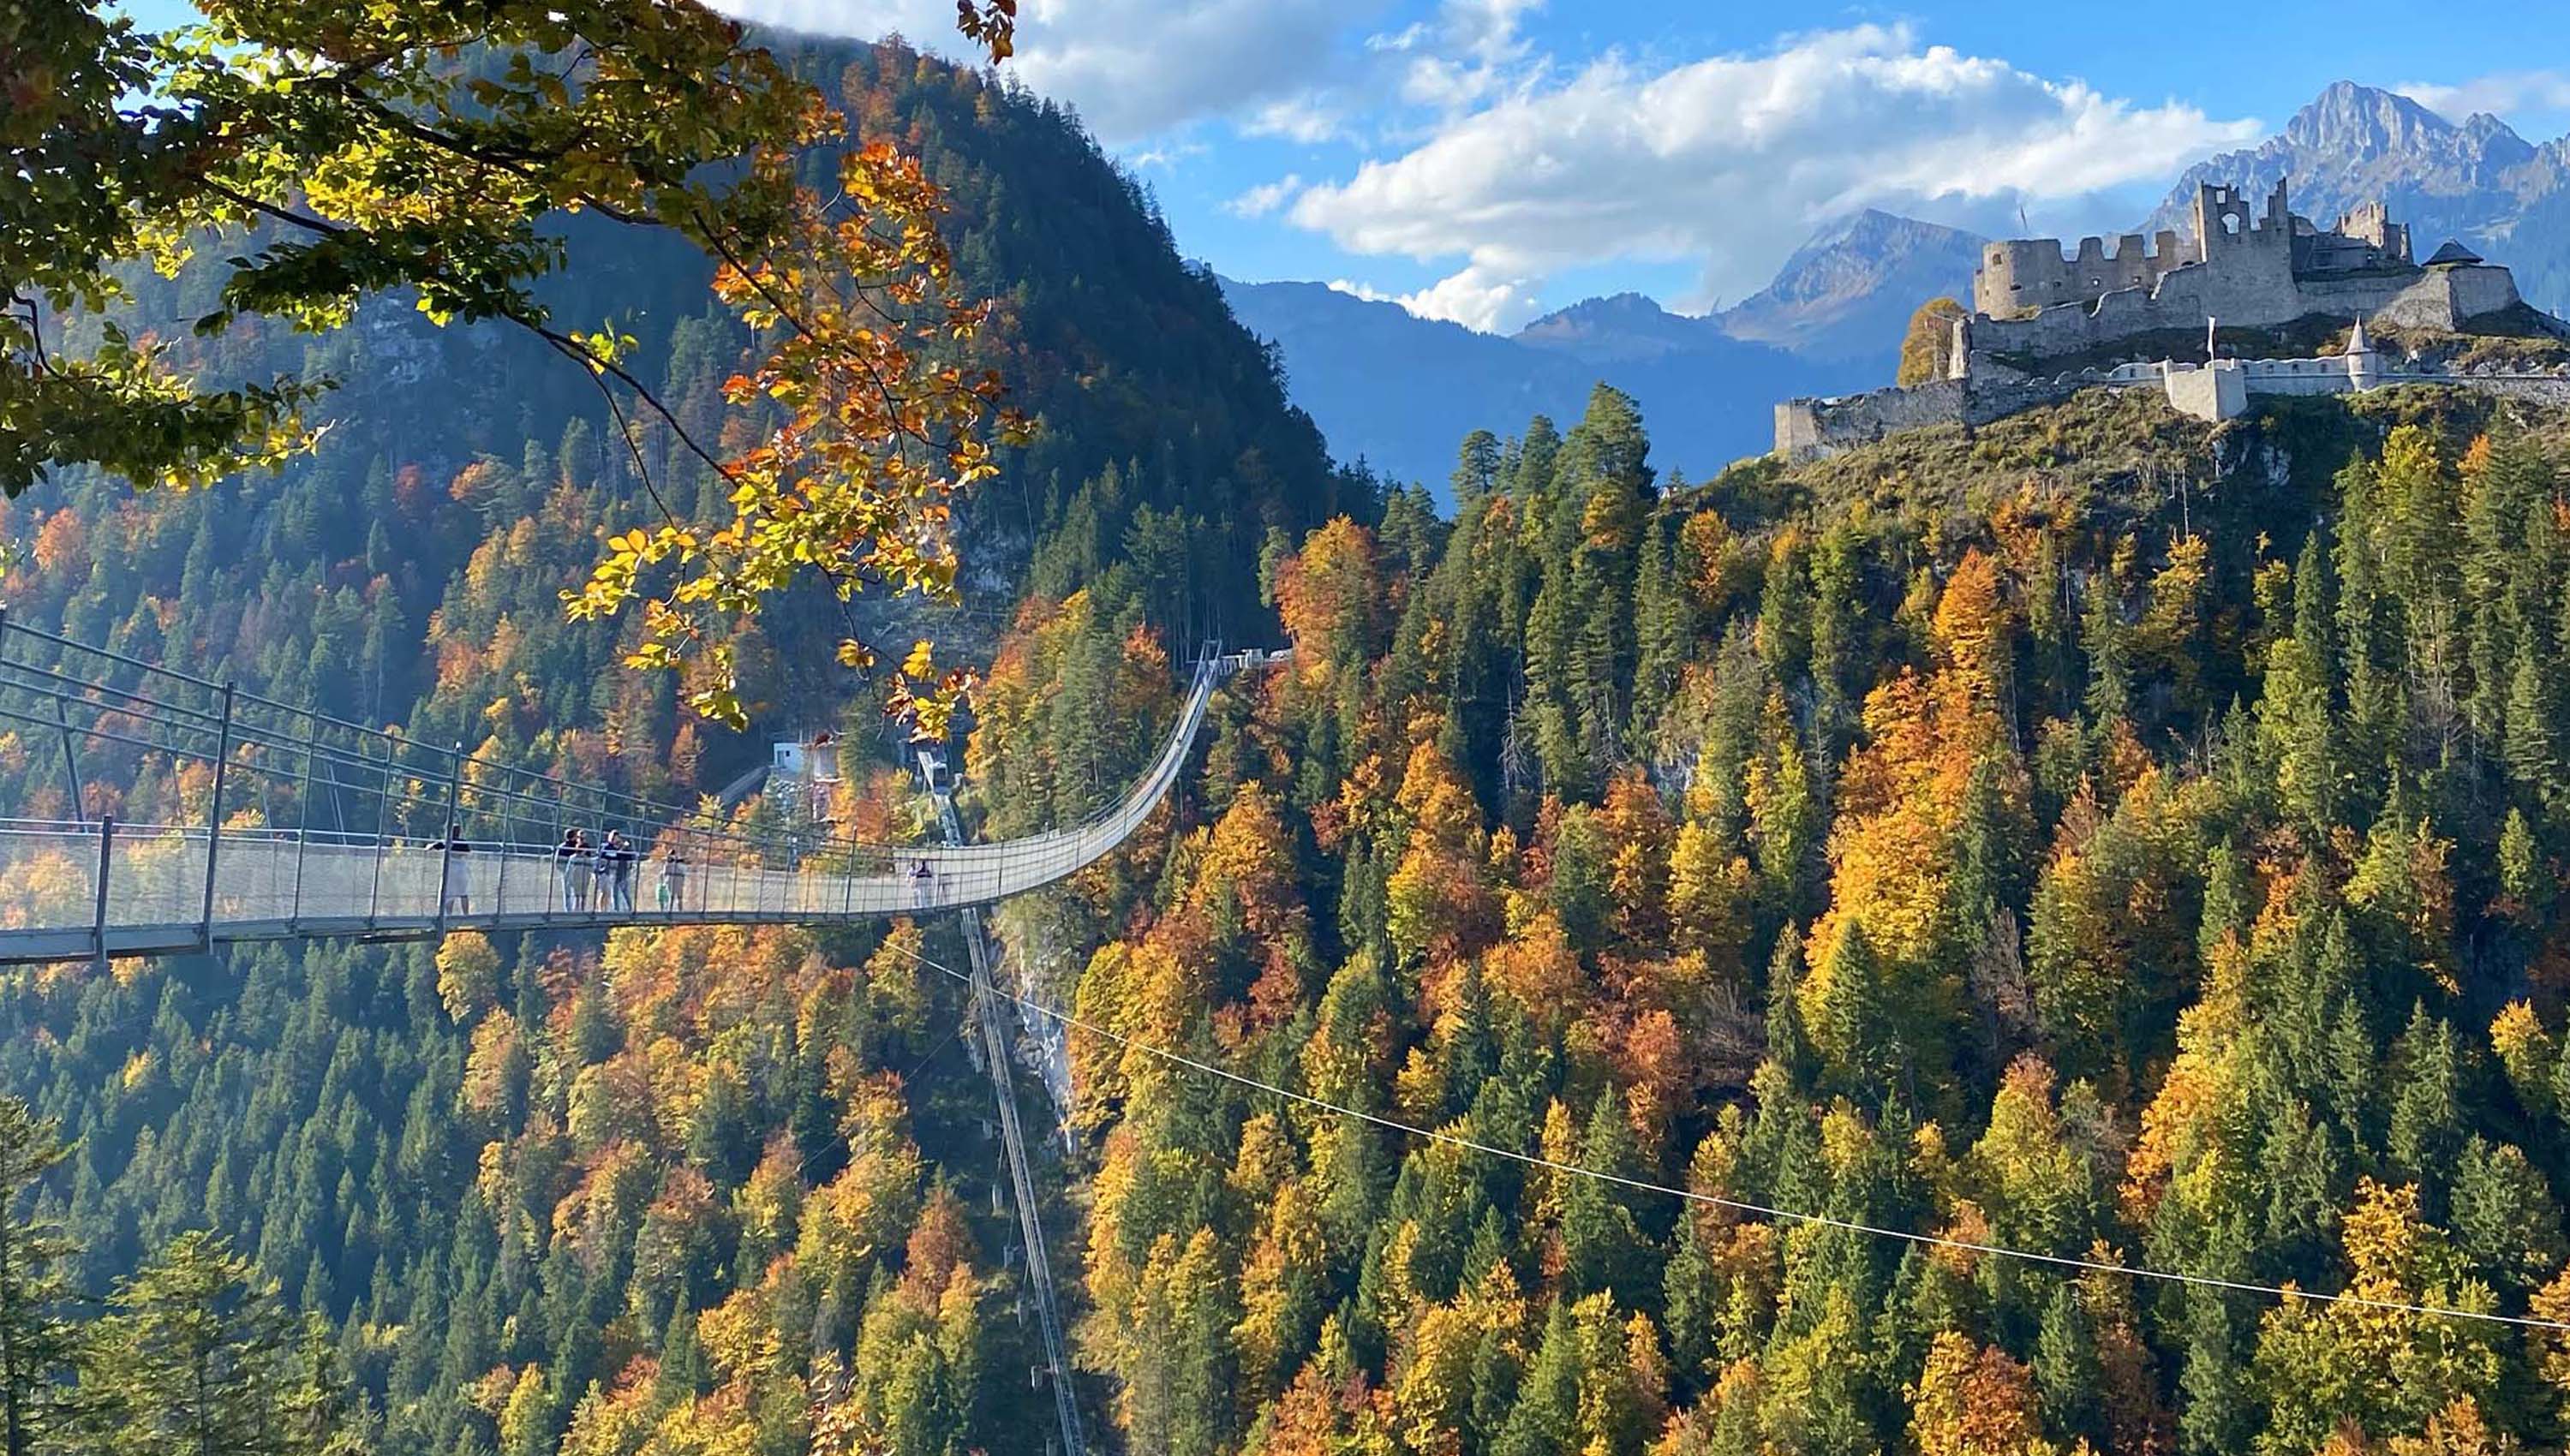 Die Hängebrücke highline179 & die Ruine Ehrenberg in Herbststimmung.